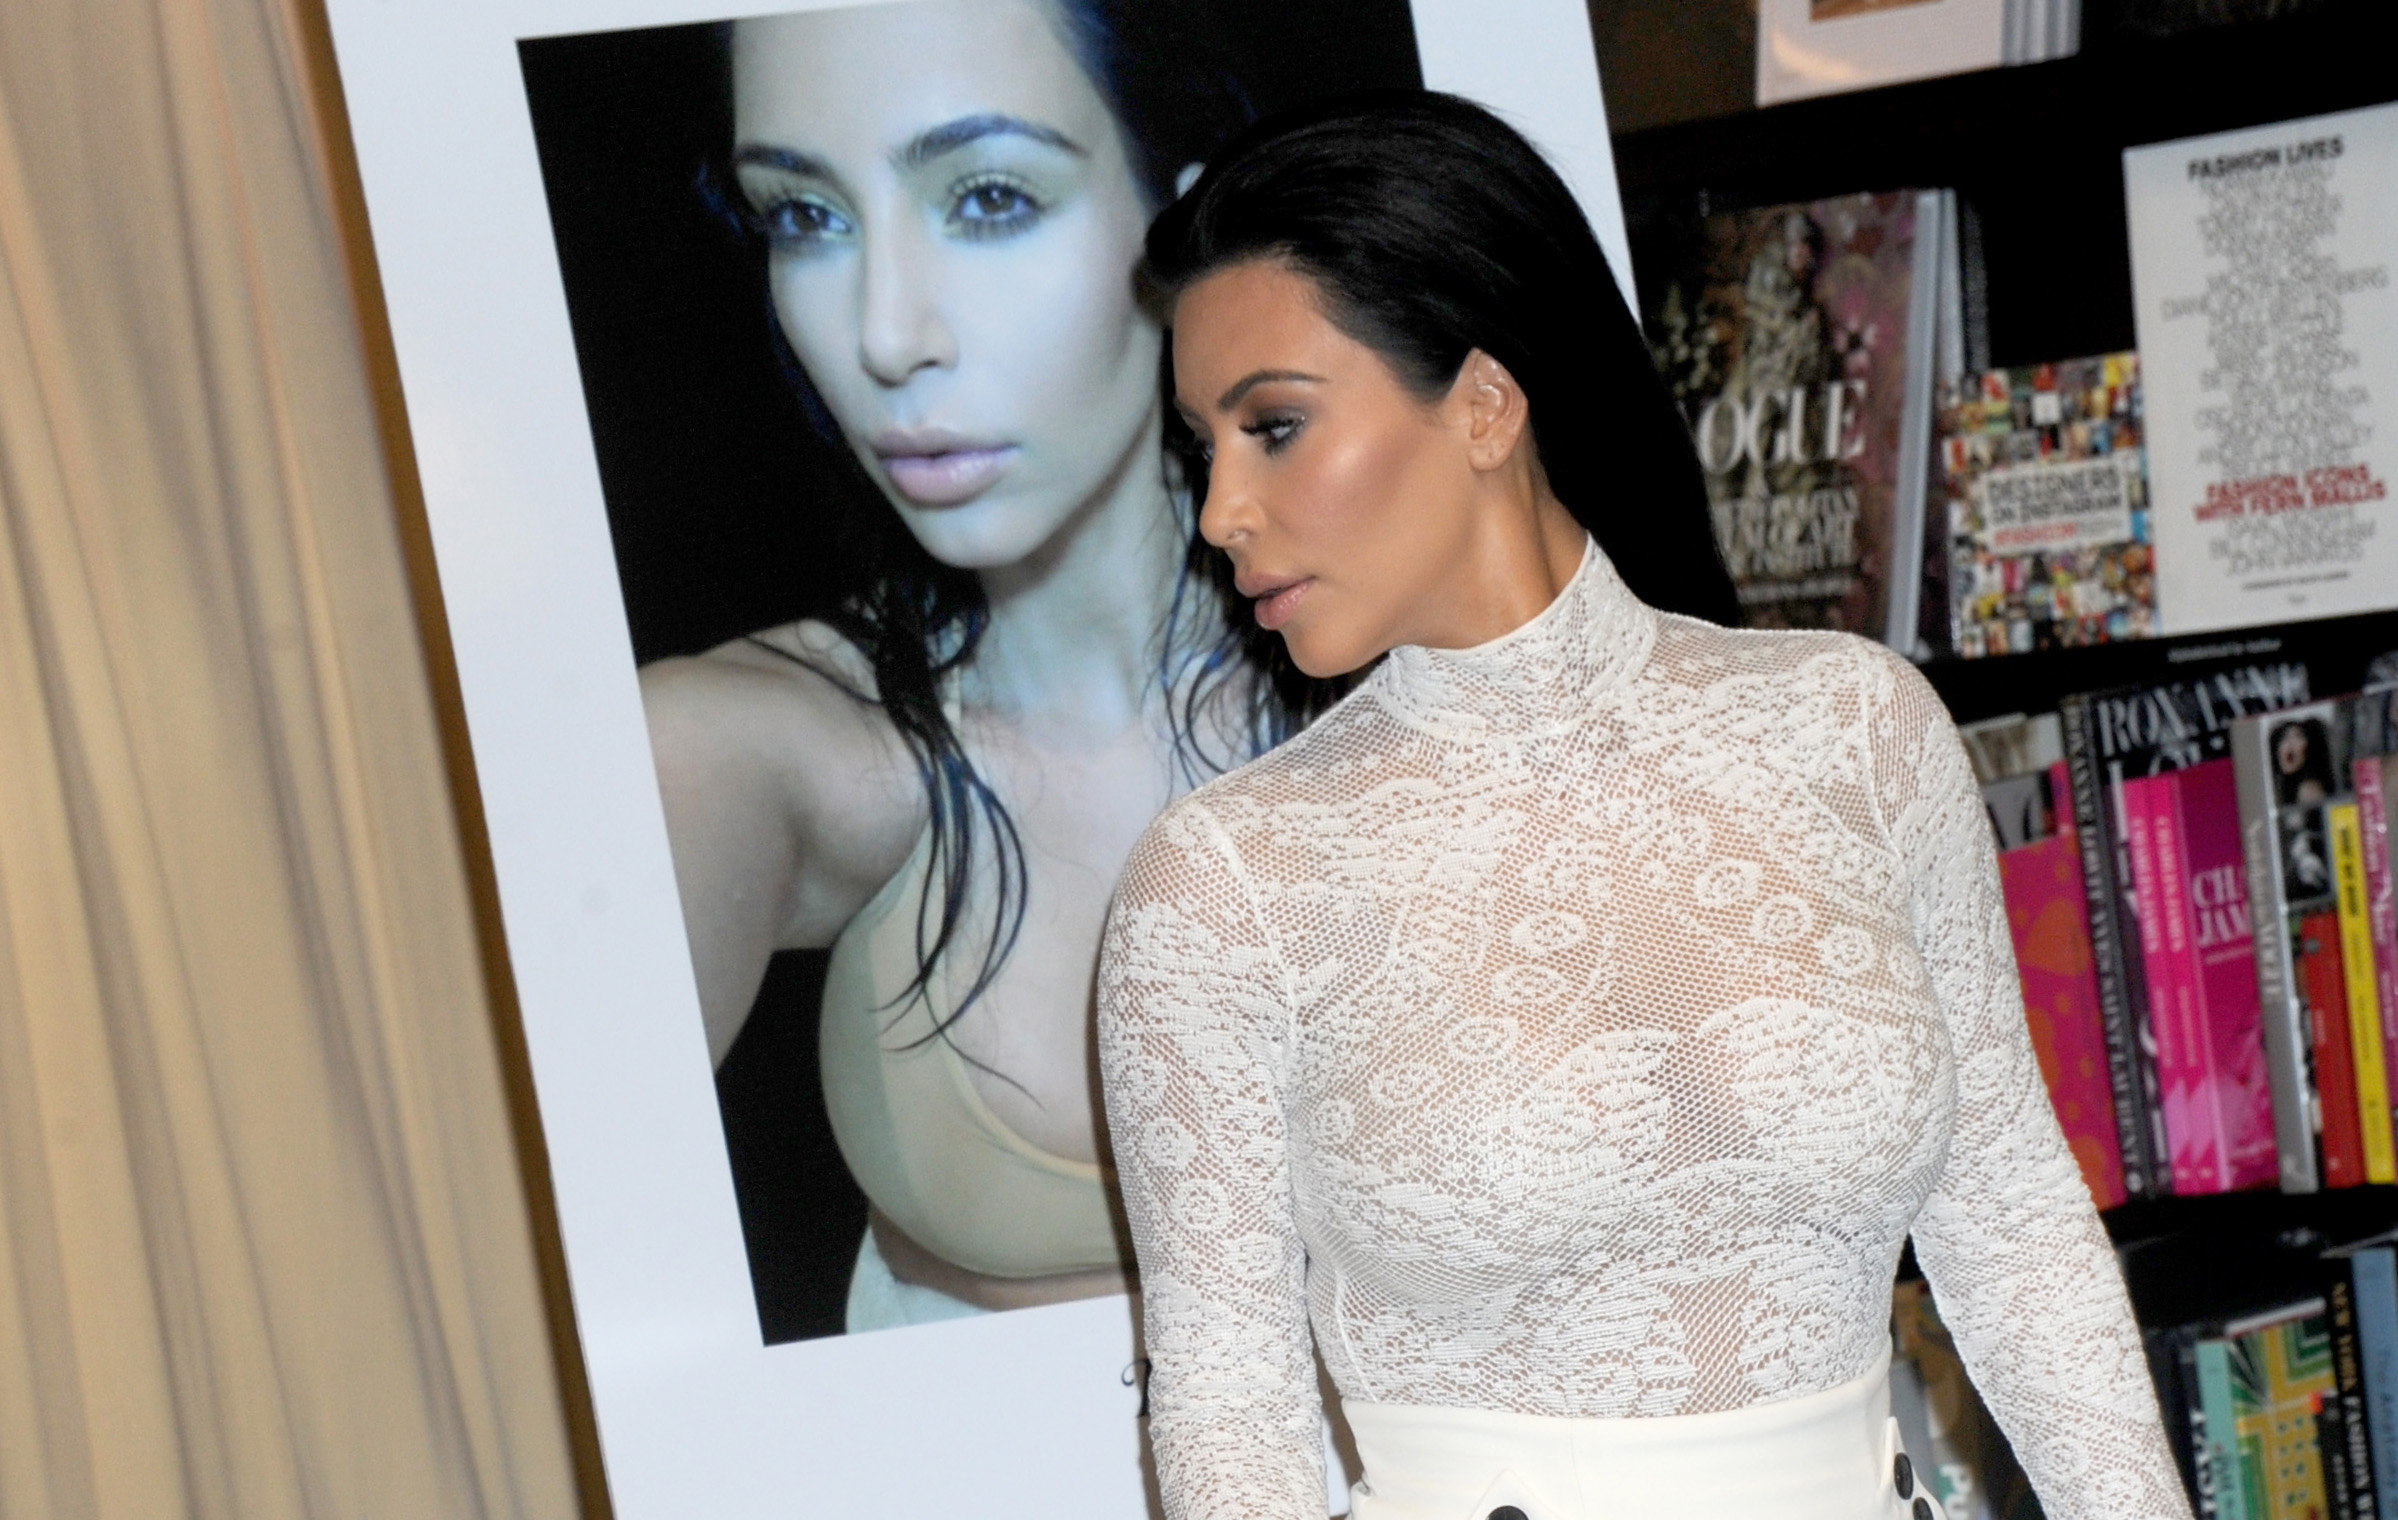 Kim Kardashian signs copies cf 'Selfish'